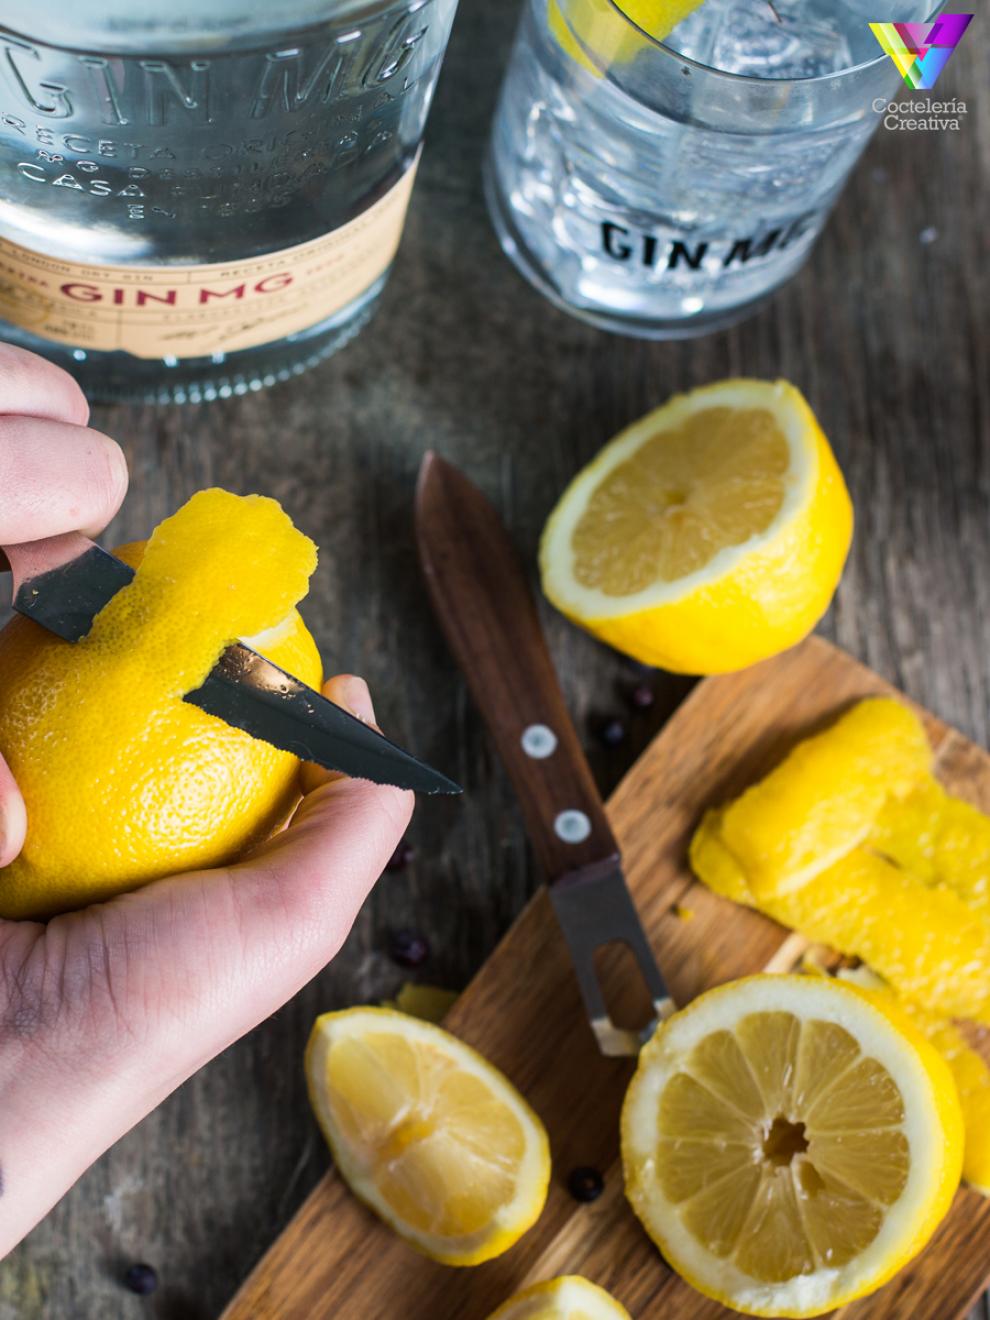 Twist de Limón para preparar el Gin&Tonic